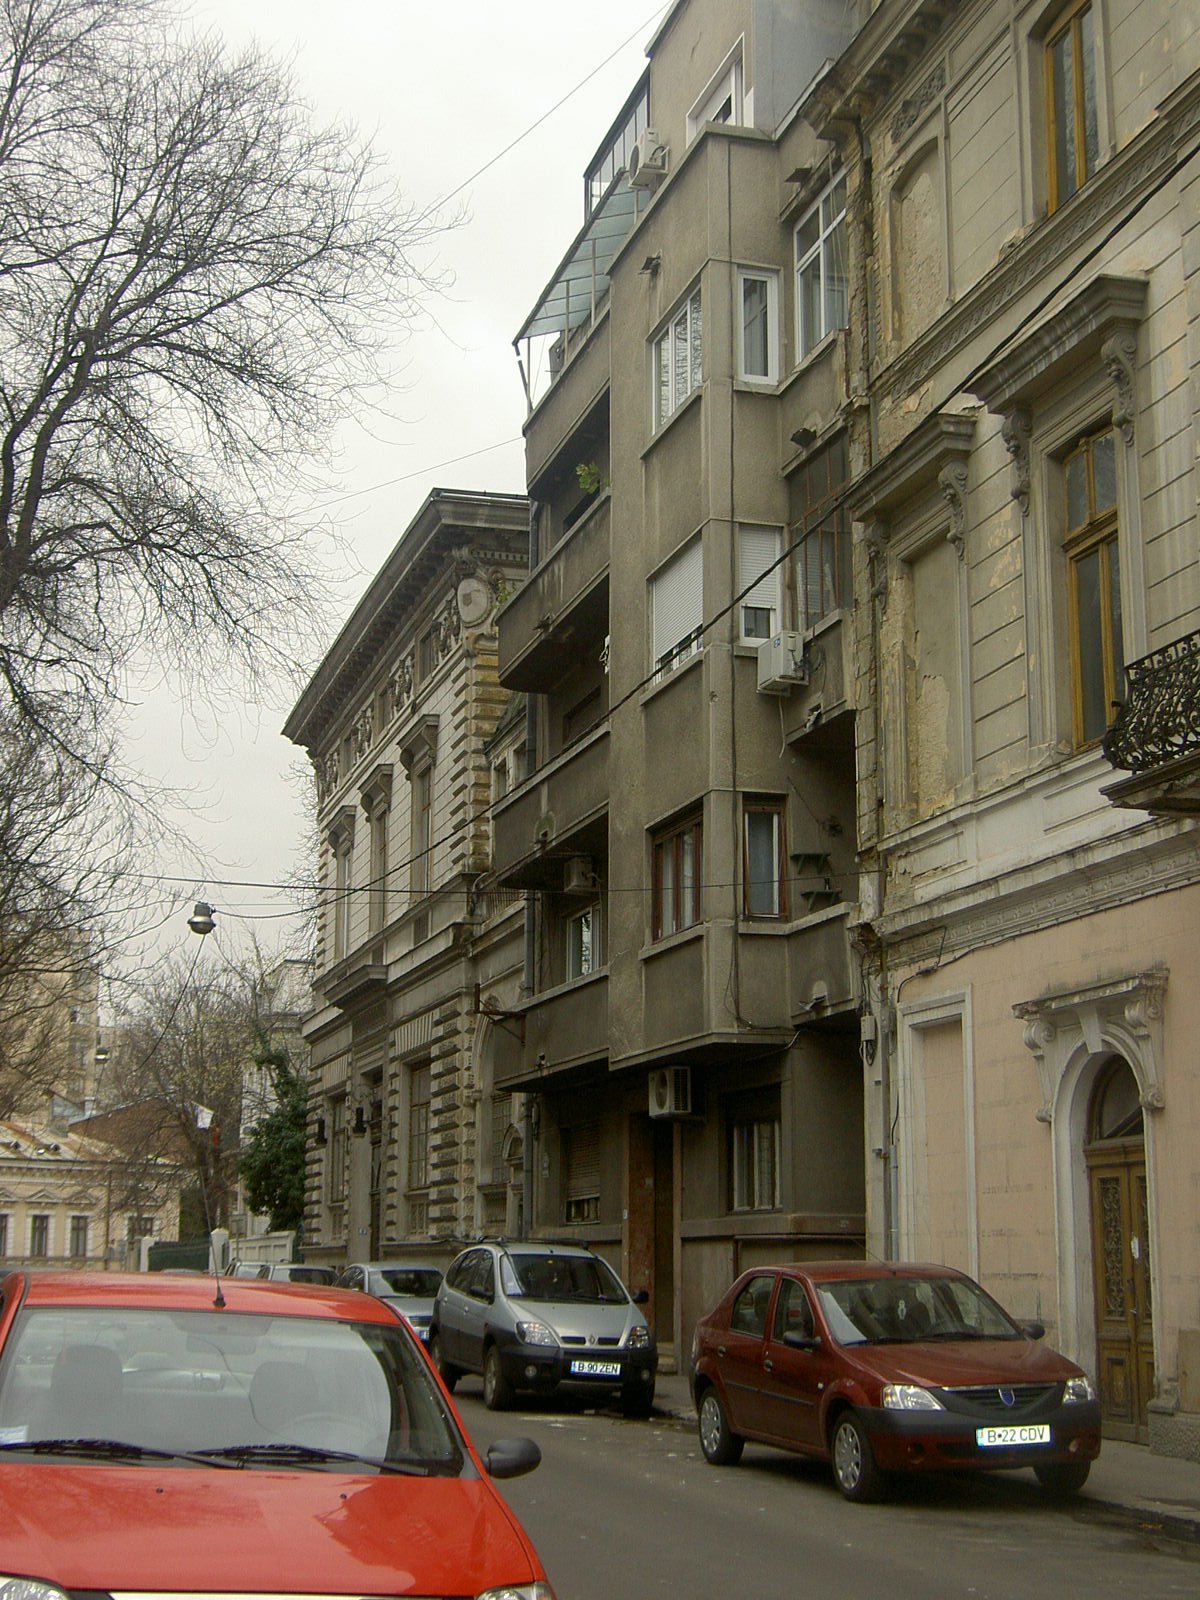 Taken on March 25th, 2007 in Bucureşti (=Bucharest) and sourced from JG029873=ALX=FinkelsteinAlex.